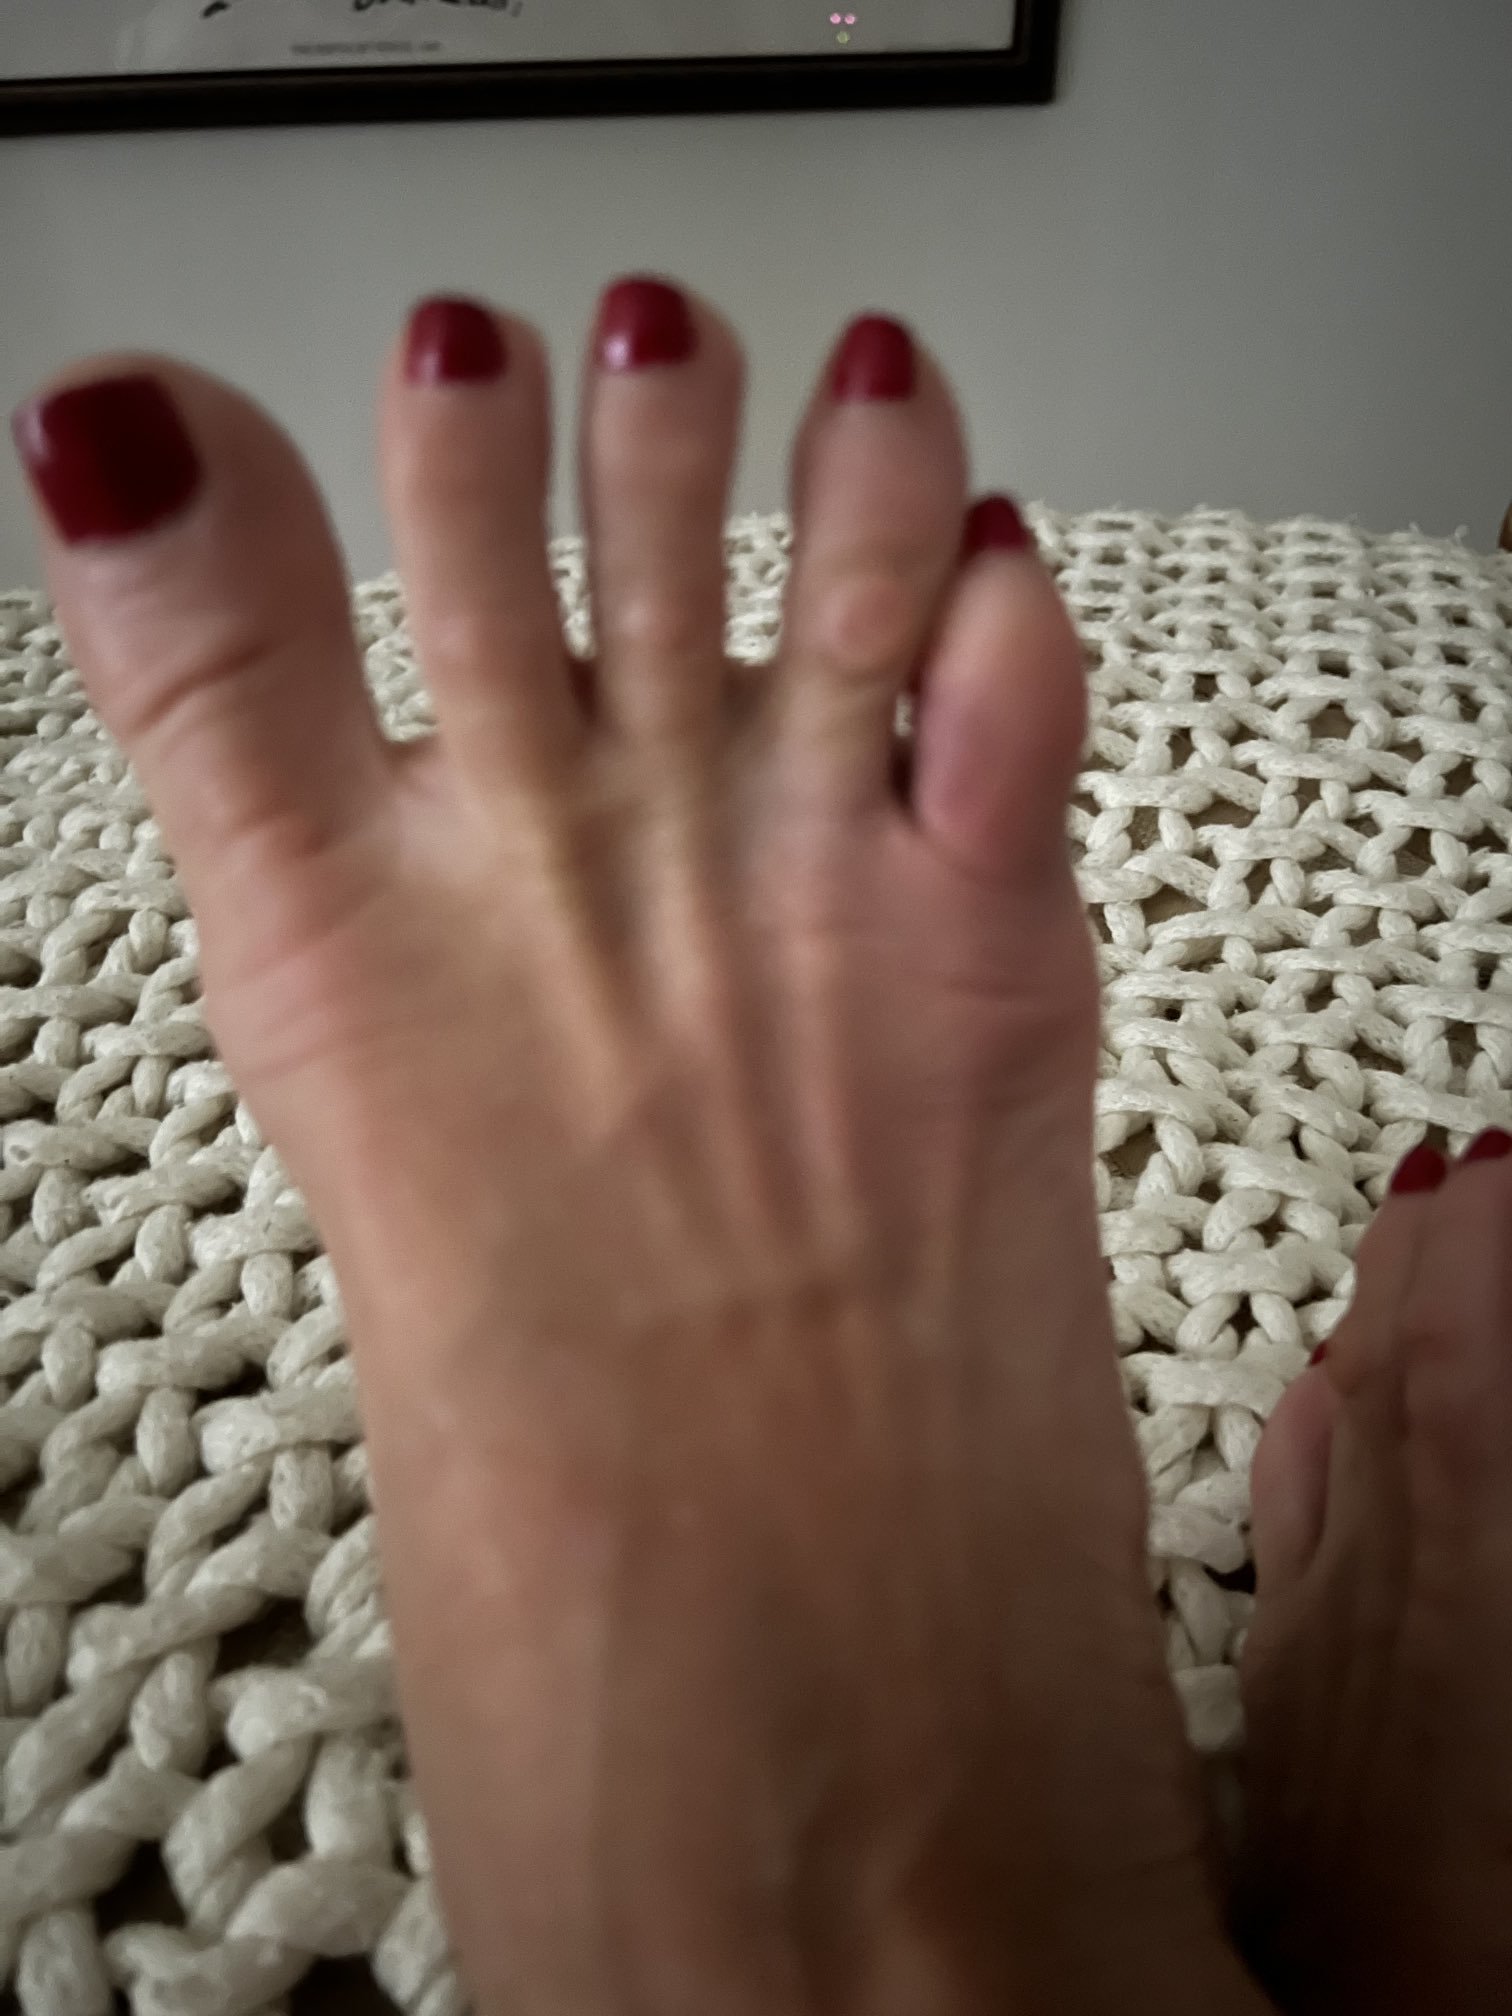 1512px x 2016px - Amber Lynn's Feet << wikiFeet X